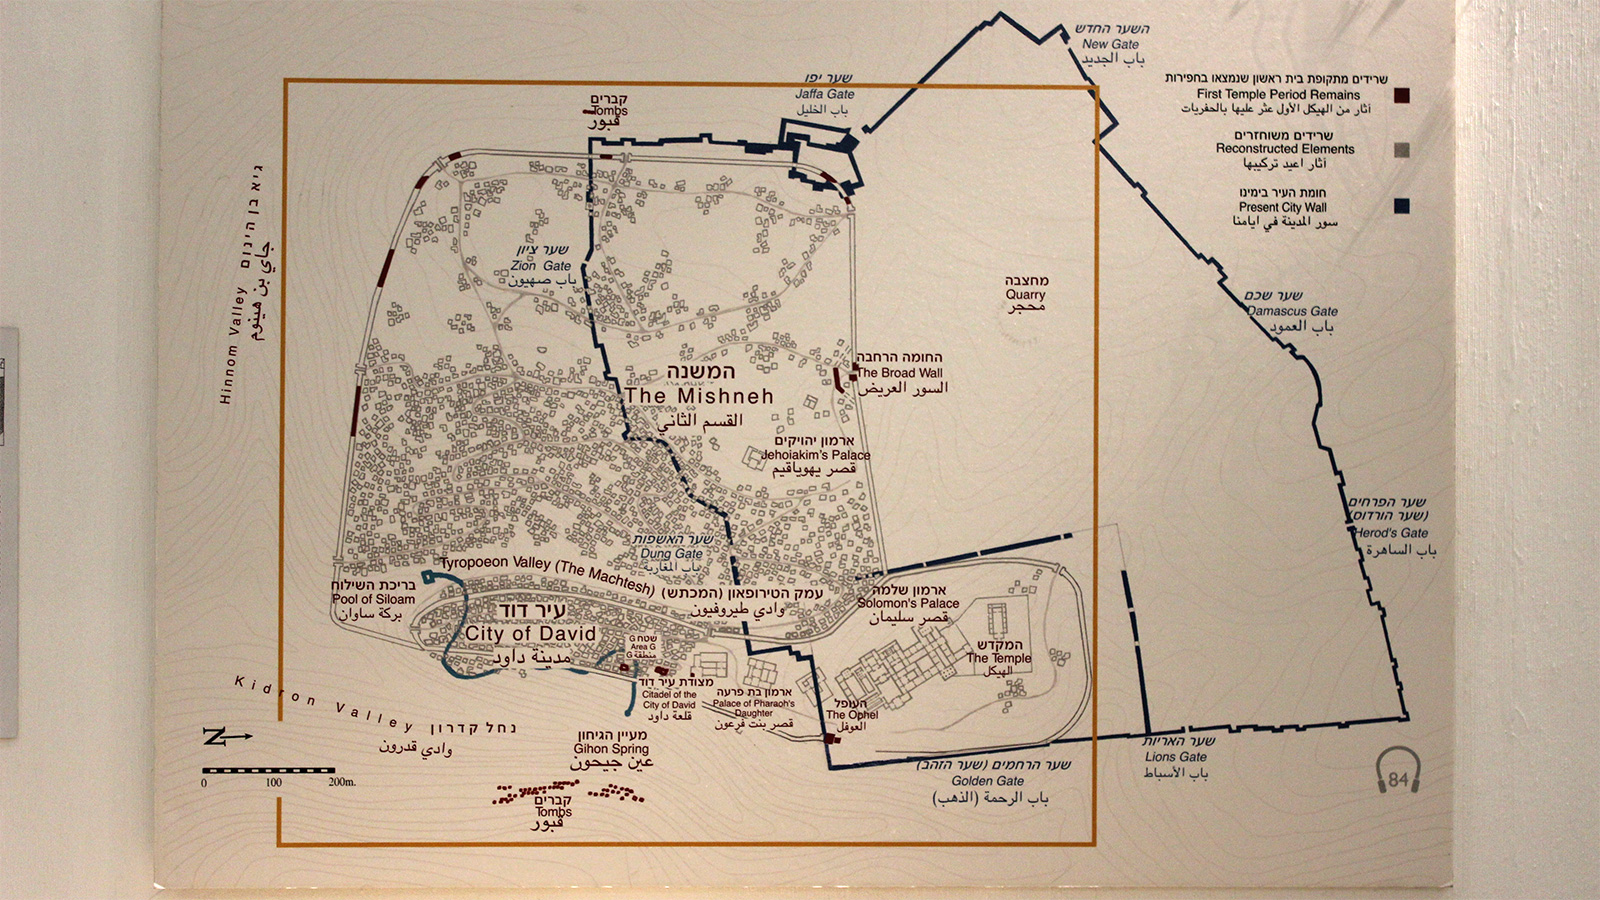 ‪خريطة المجسم التي ثبتت أعلاه لتدل الزوار على تفاصيله وأسماء بعض الأماكن فيه‬  (الجزيرة)